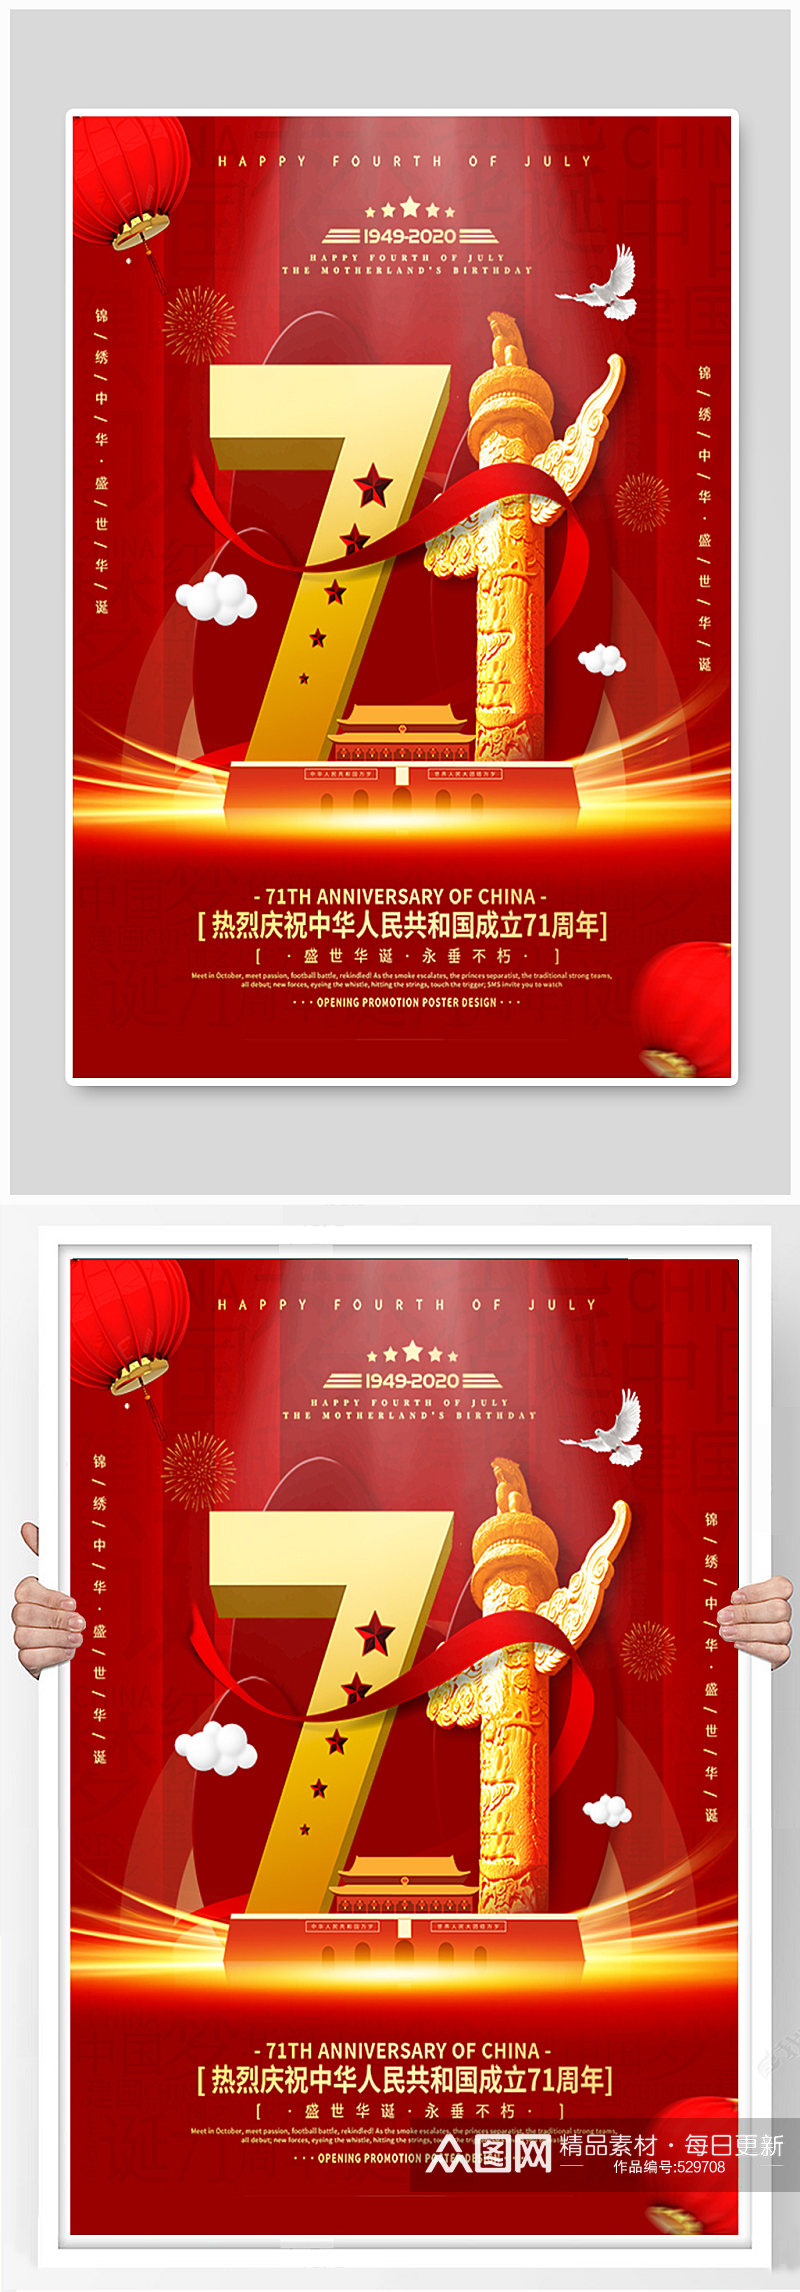 庆祝新中国成立71周年宣传海报素材